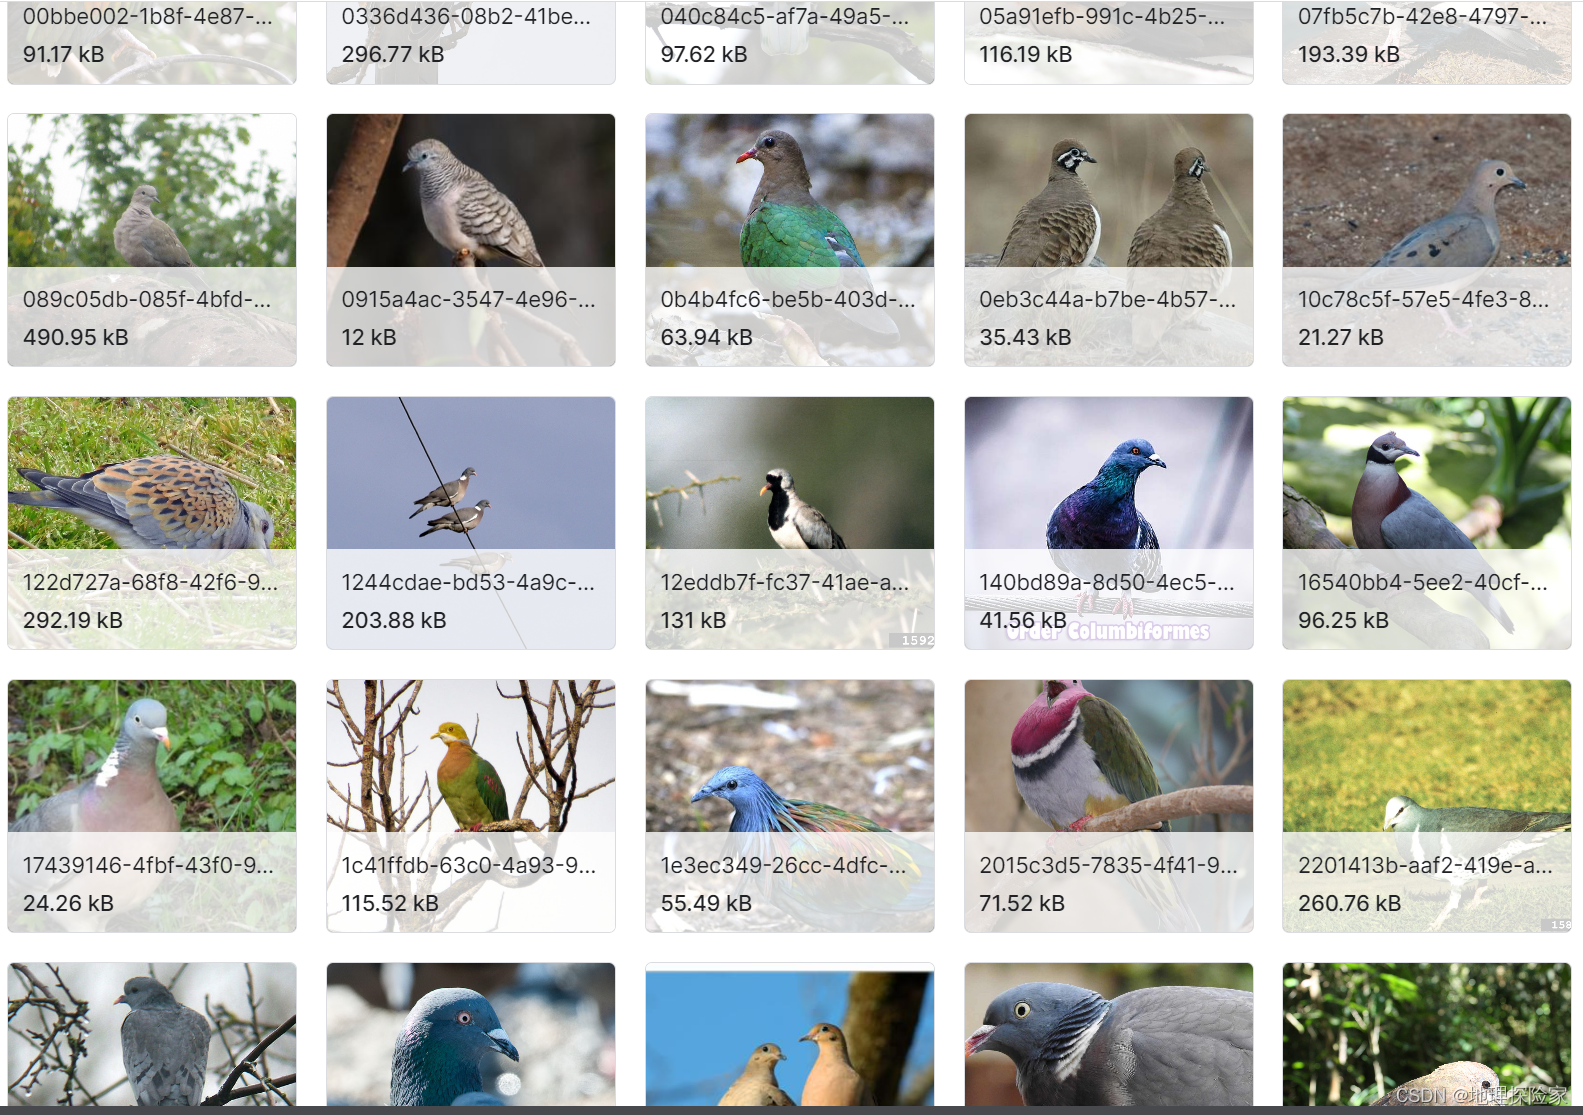 鸟类分类、鸟类声音相关深度学习数据集大合集